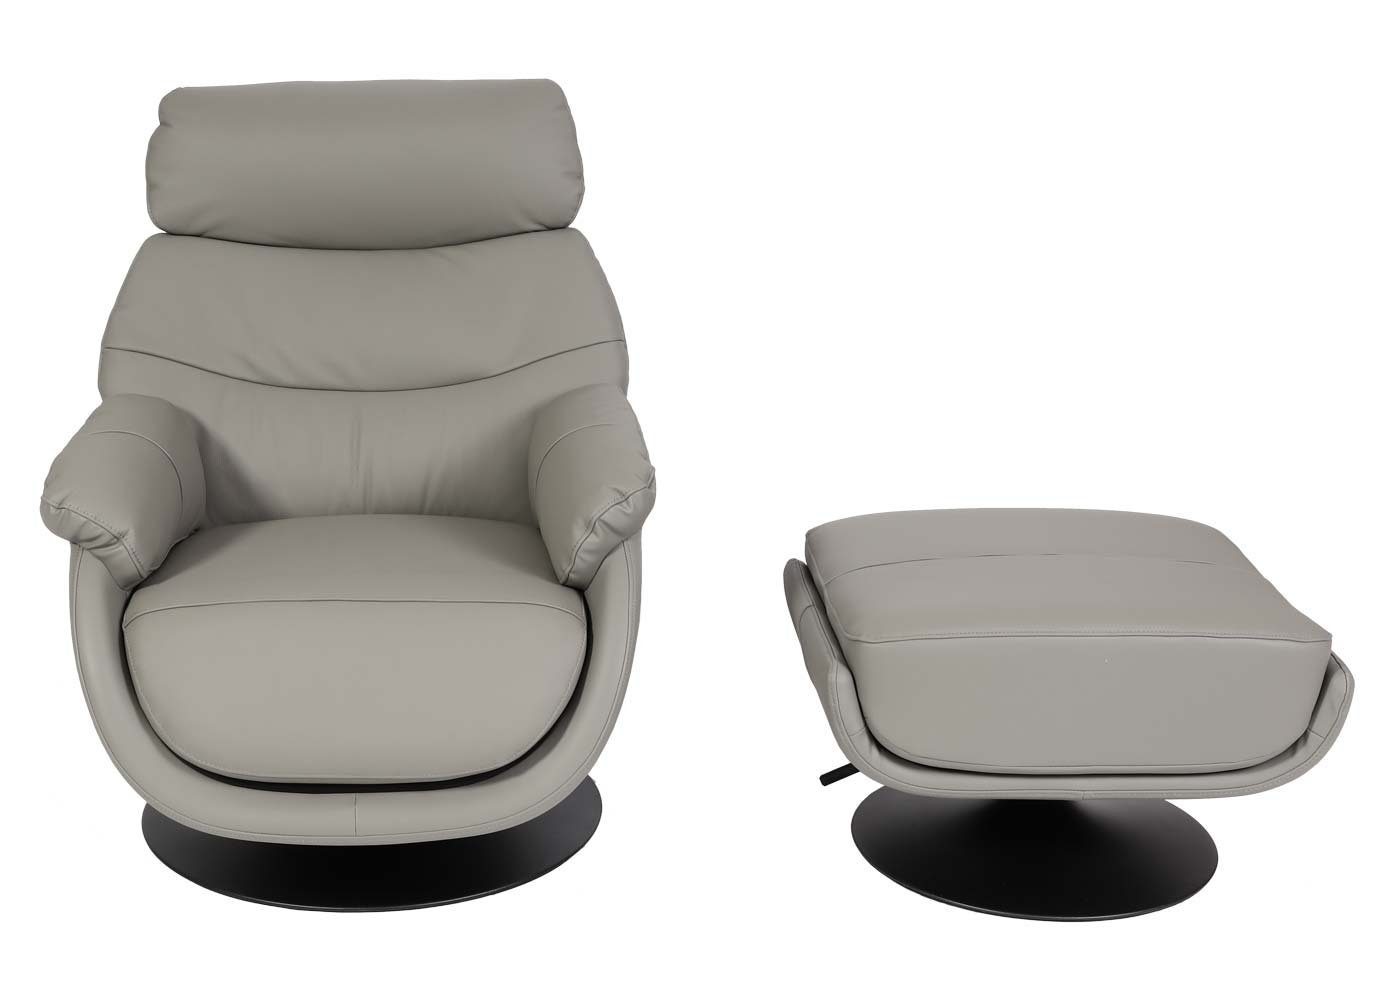 Feststellhebel, Breite grau Mit grau MCW Mit Relaxsessel Armlehnen Sitzfläche, | MCW-K99,